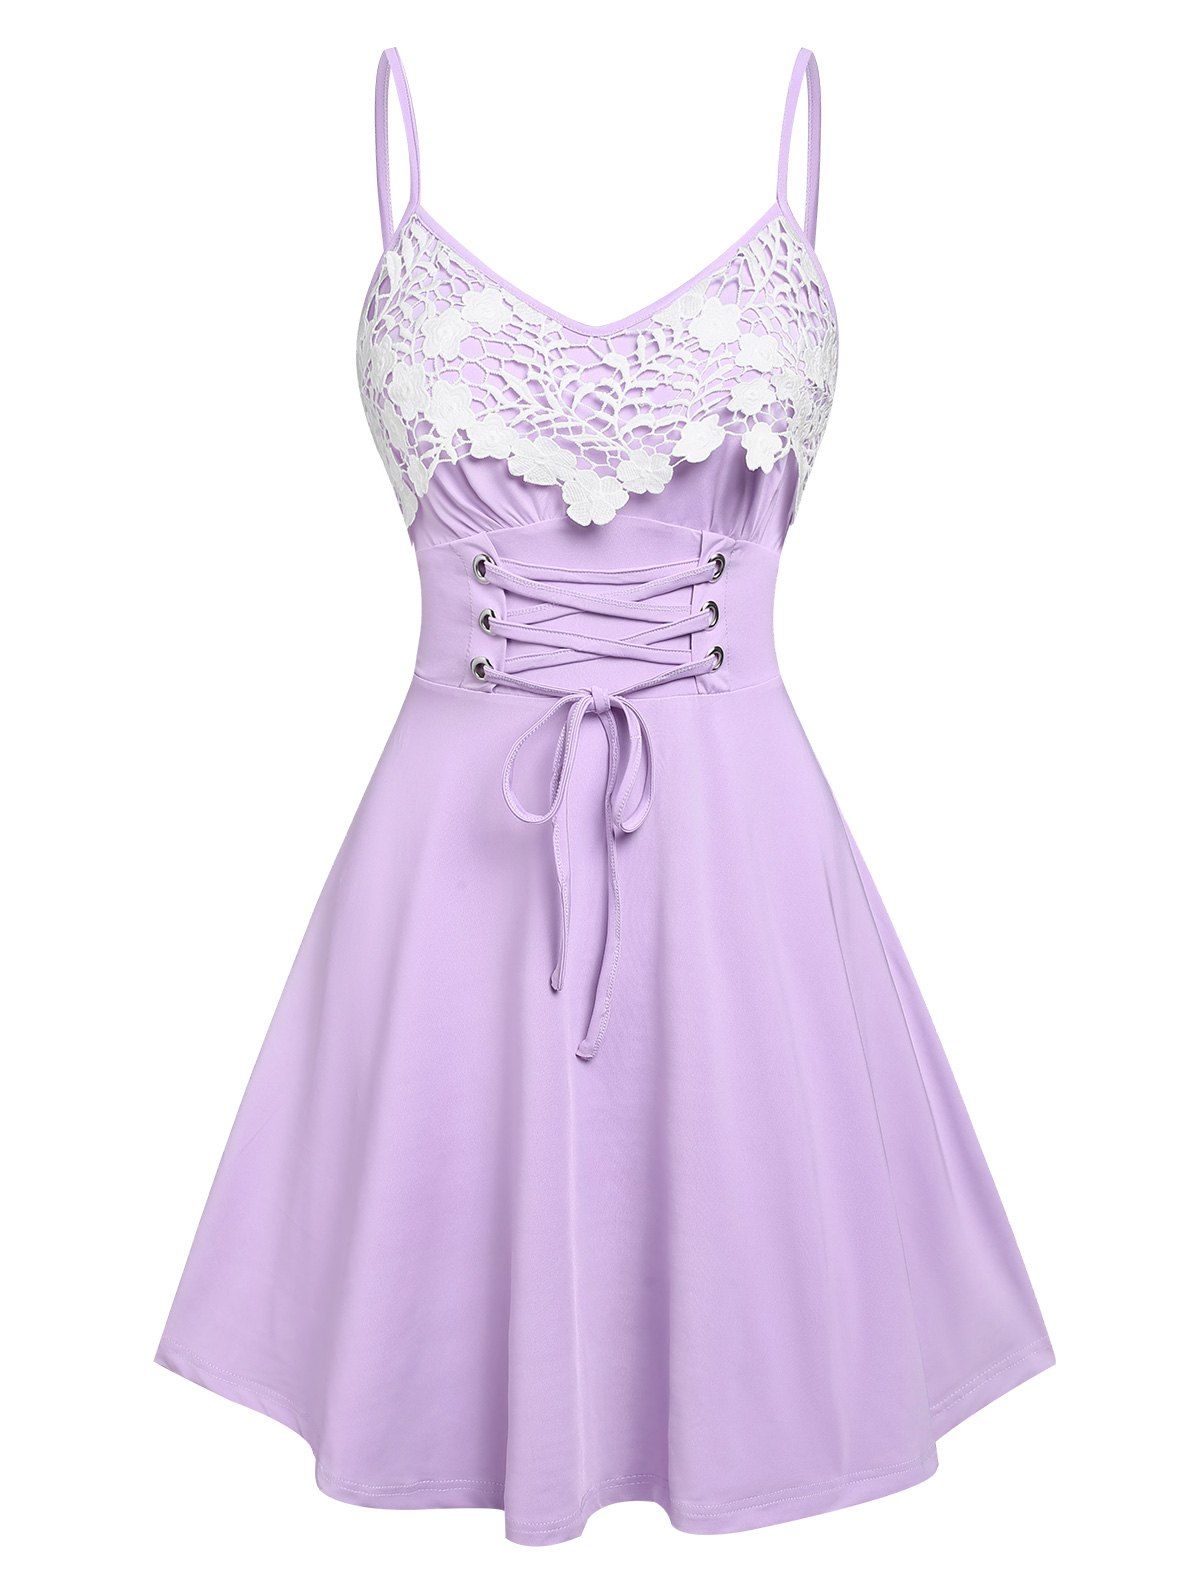 Summer Lace Up Floral Pattern Corset Waist Applique Slip Mini Dress - LIGHT PURPLE XXXL